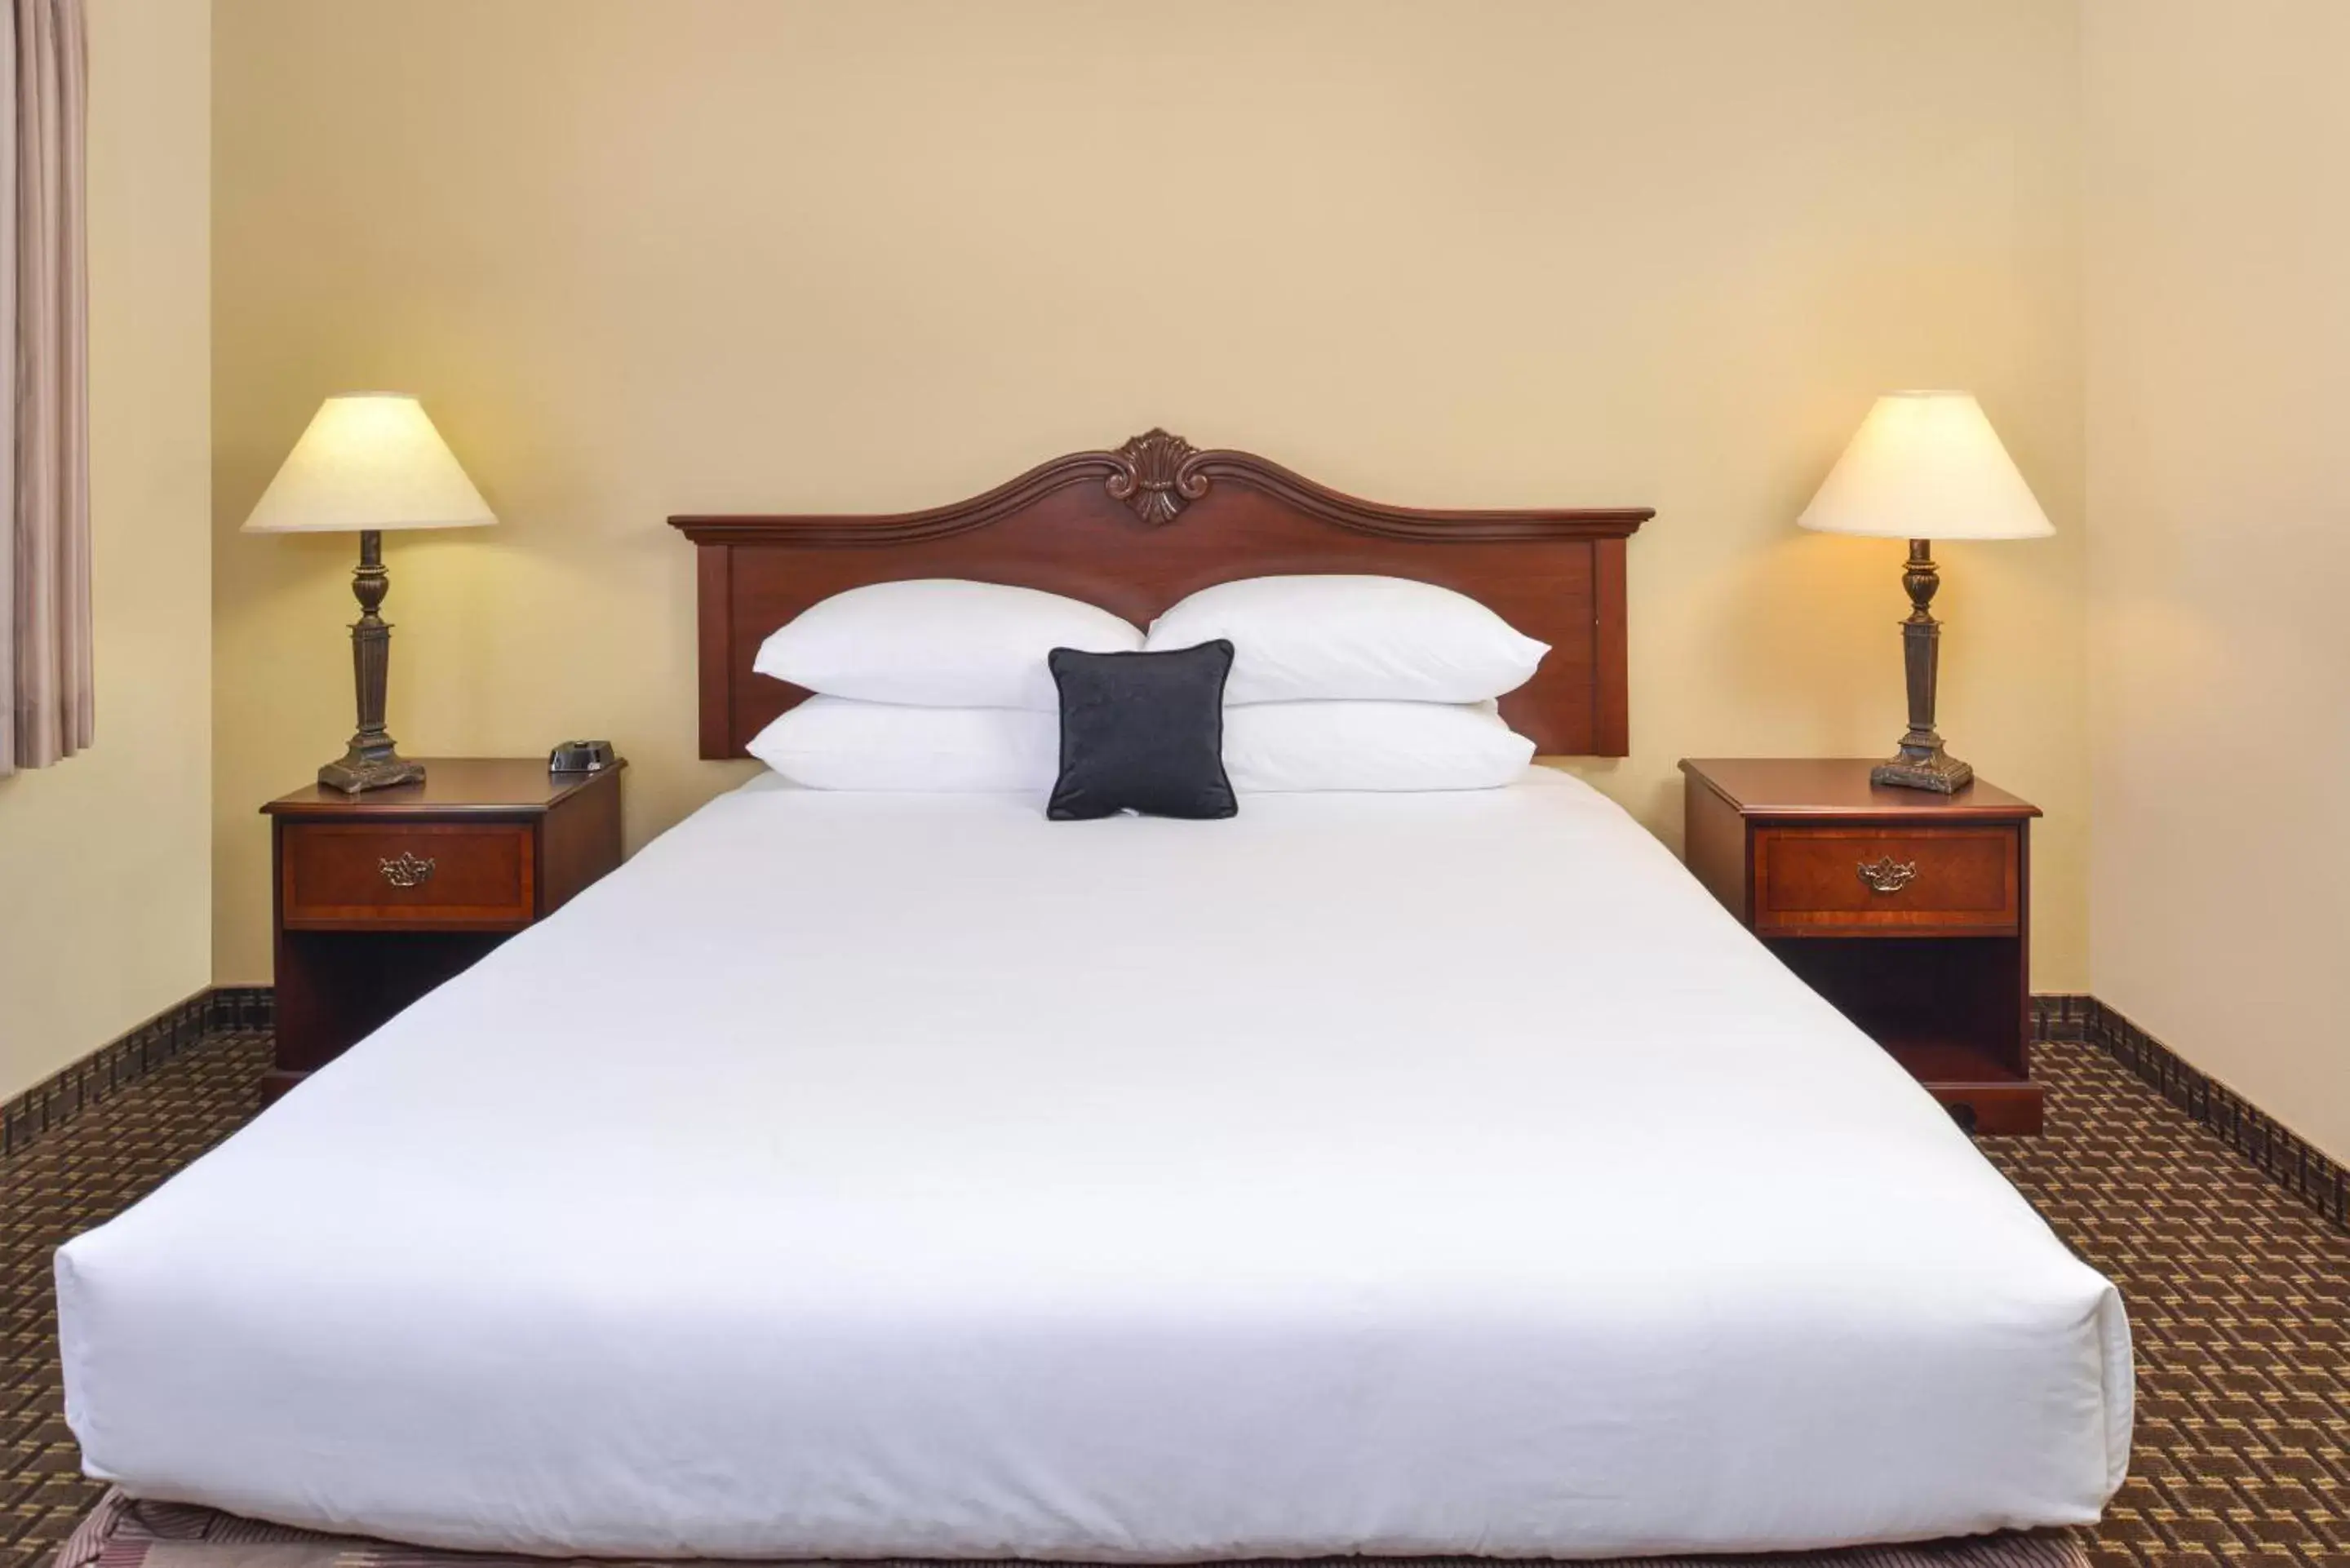 Bed, Room Photo in Comfort Inn & Suites